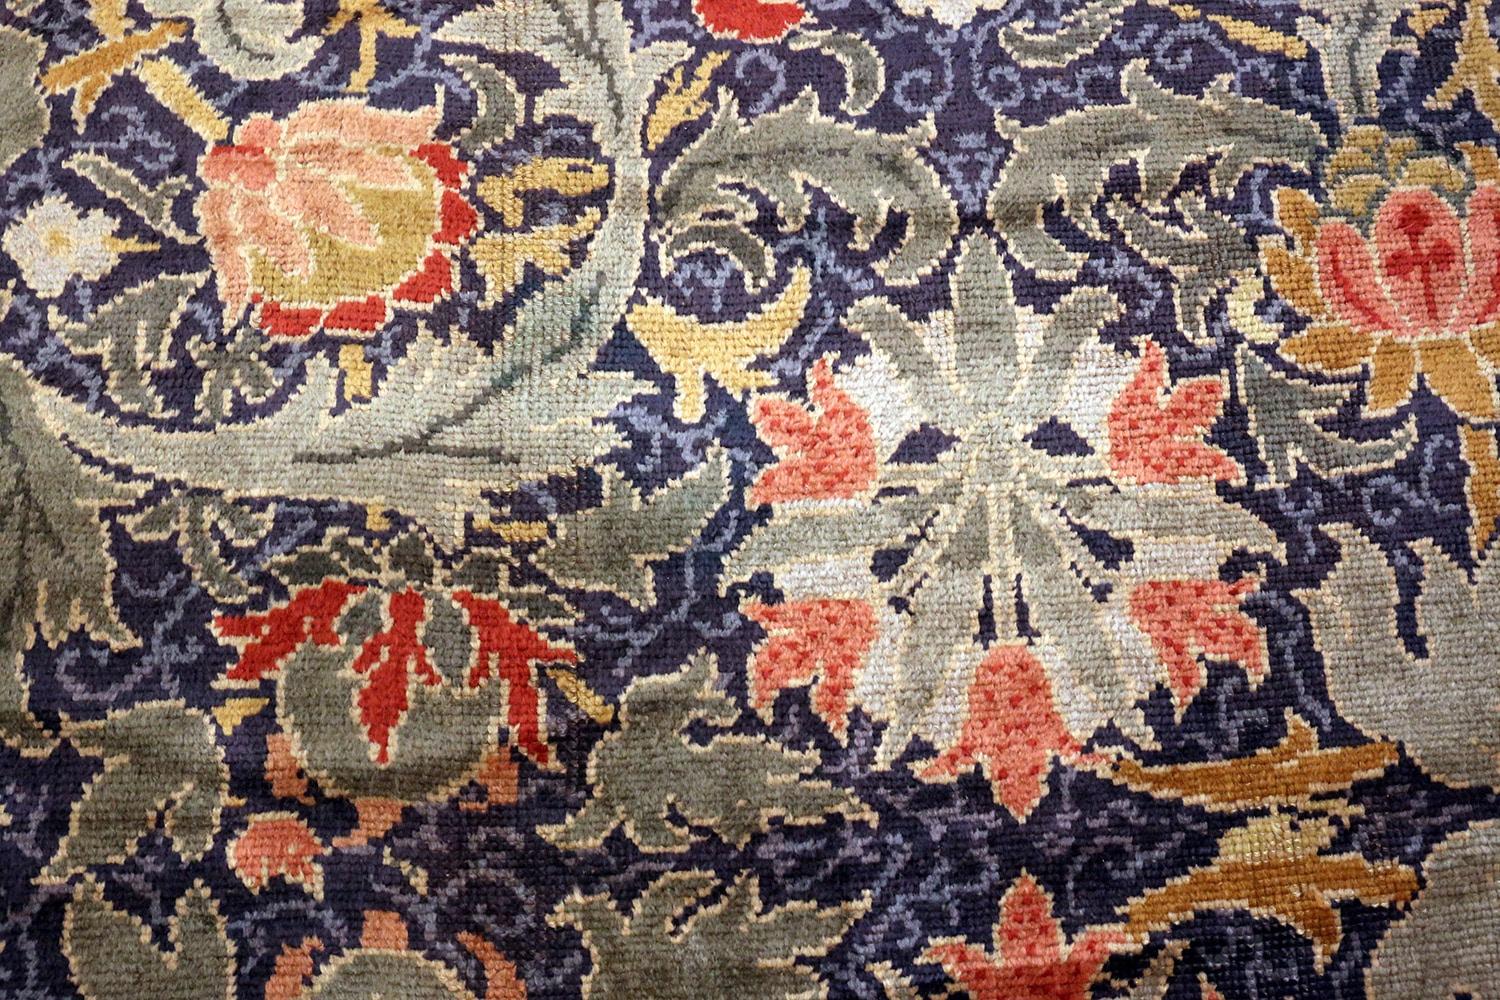 Prächtiger und seltener großer überdimensionaler antiker Arts & Crafts William Morris Design Teppich, Herkunftsland/Teppichart: Irischer Teppich, ungefähres Datum: Ende des 19. Jahrhunderts. Größe: 19 Fuß x 30 Fuß (5,79 m x 9,14 m)

